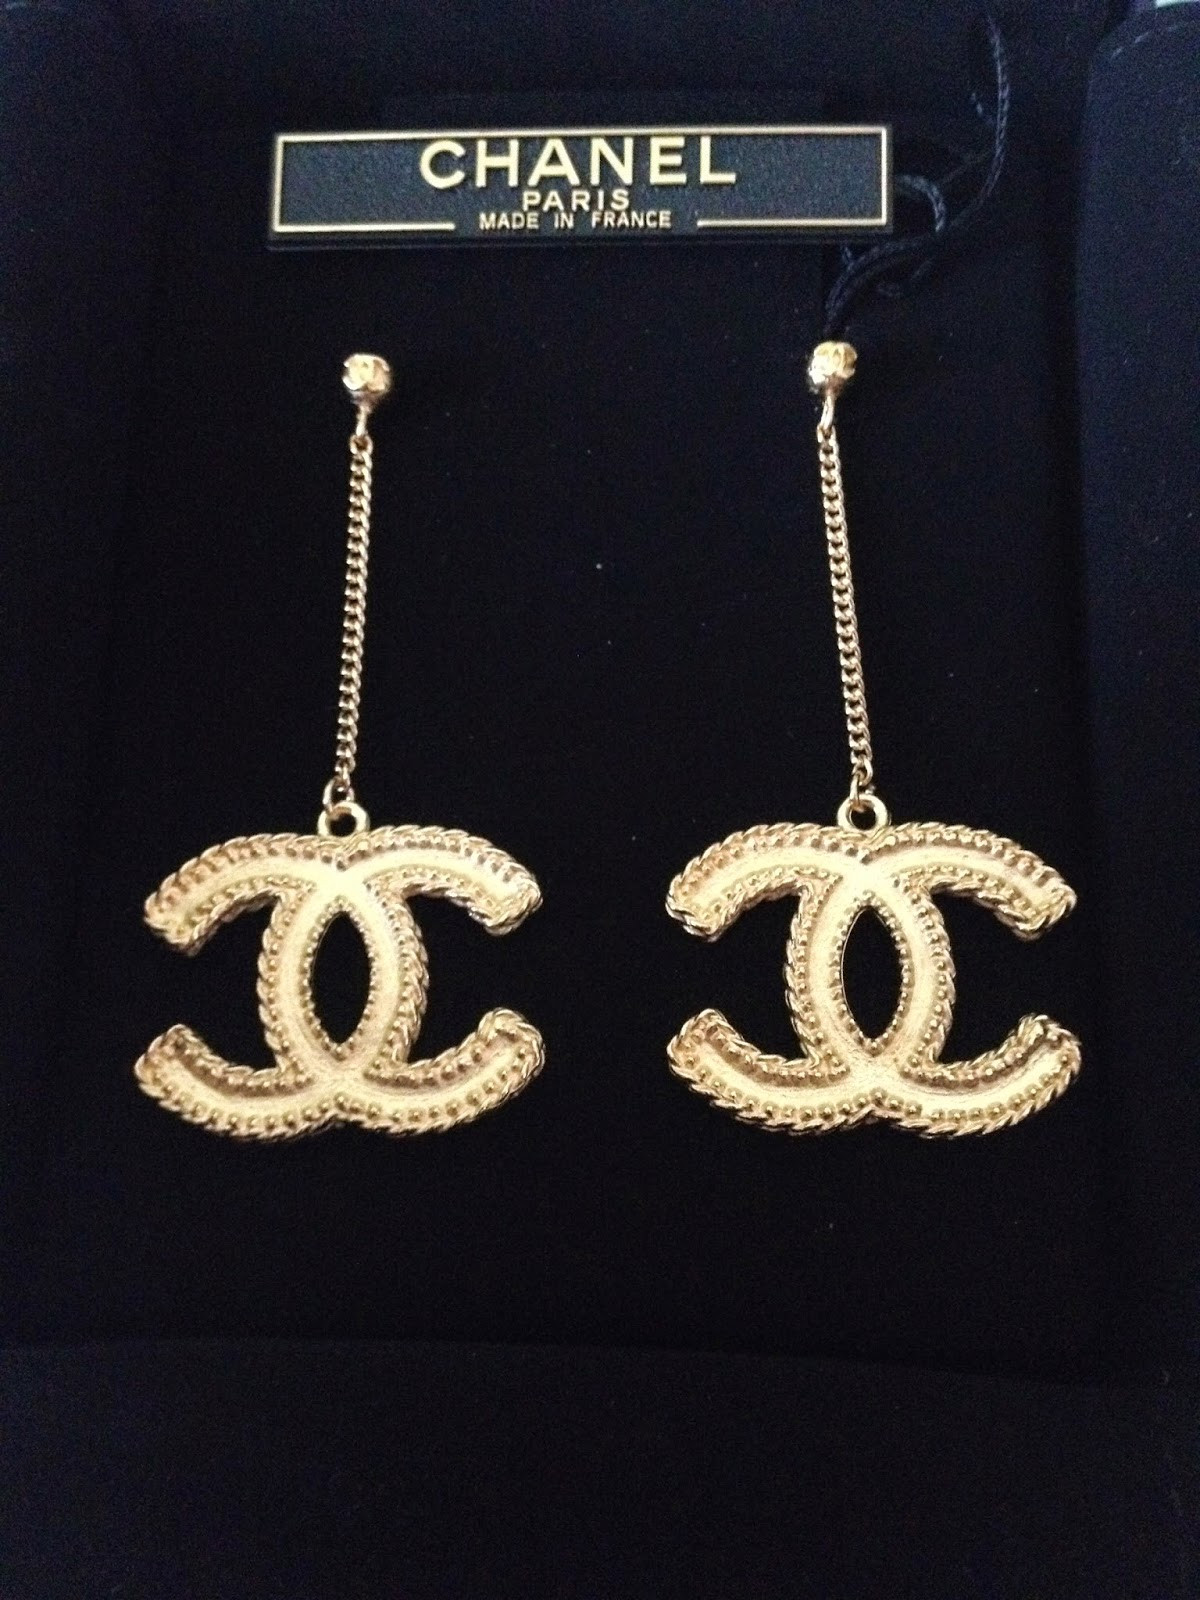 Chanel Cc Logo Earrings
 Chanel Earring Review Chanel Earrings LARGE CC LOGO Gold